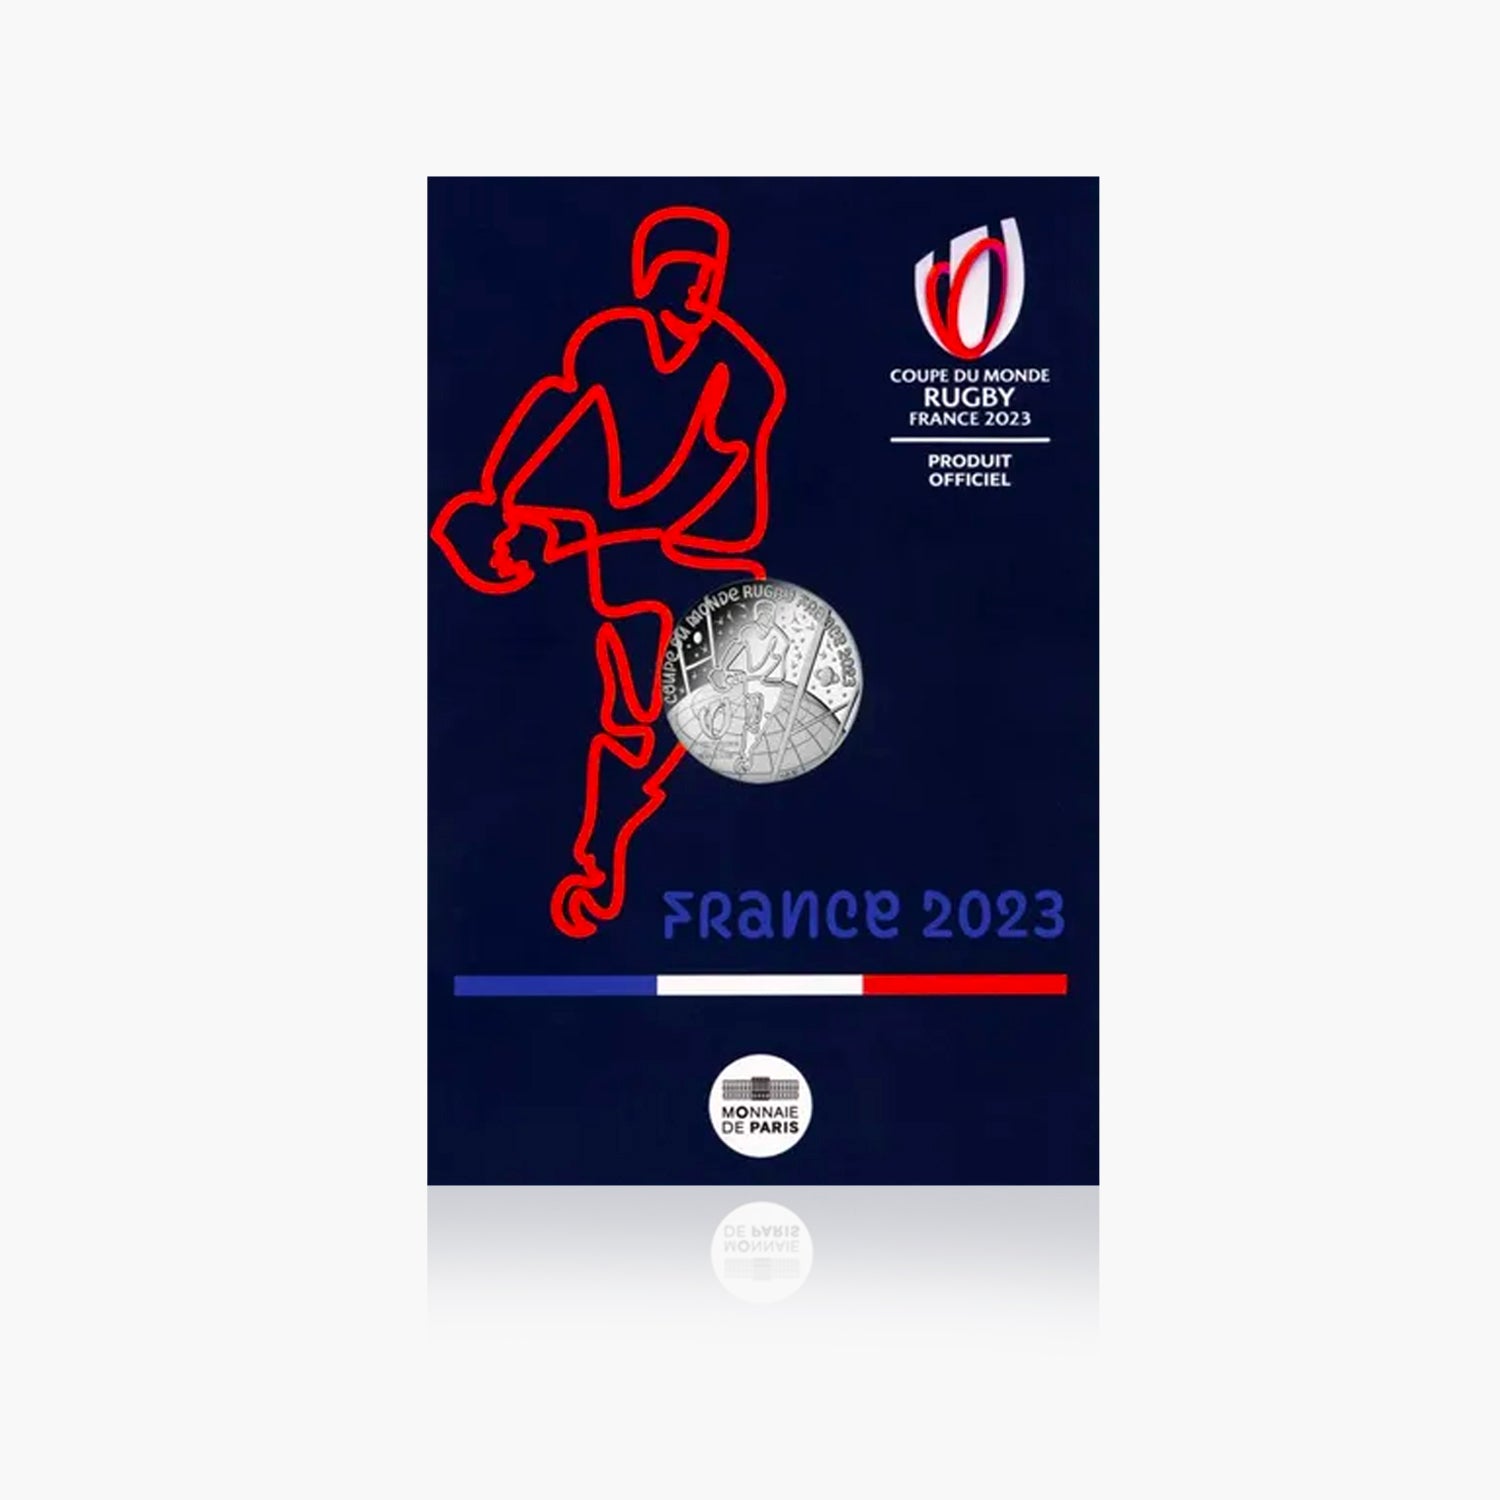 ダンカーターラグビー ワールドカップ 2023 記念10ユーロ銀貨 - その他